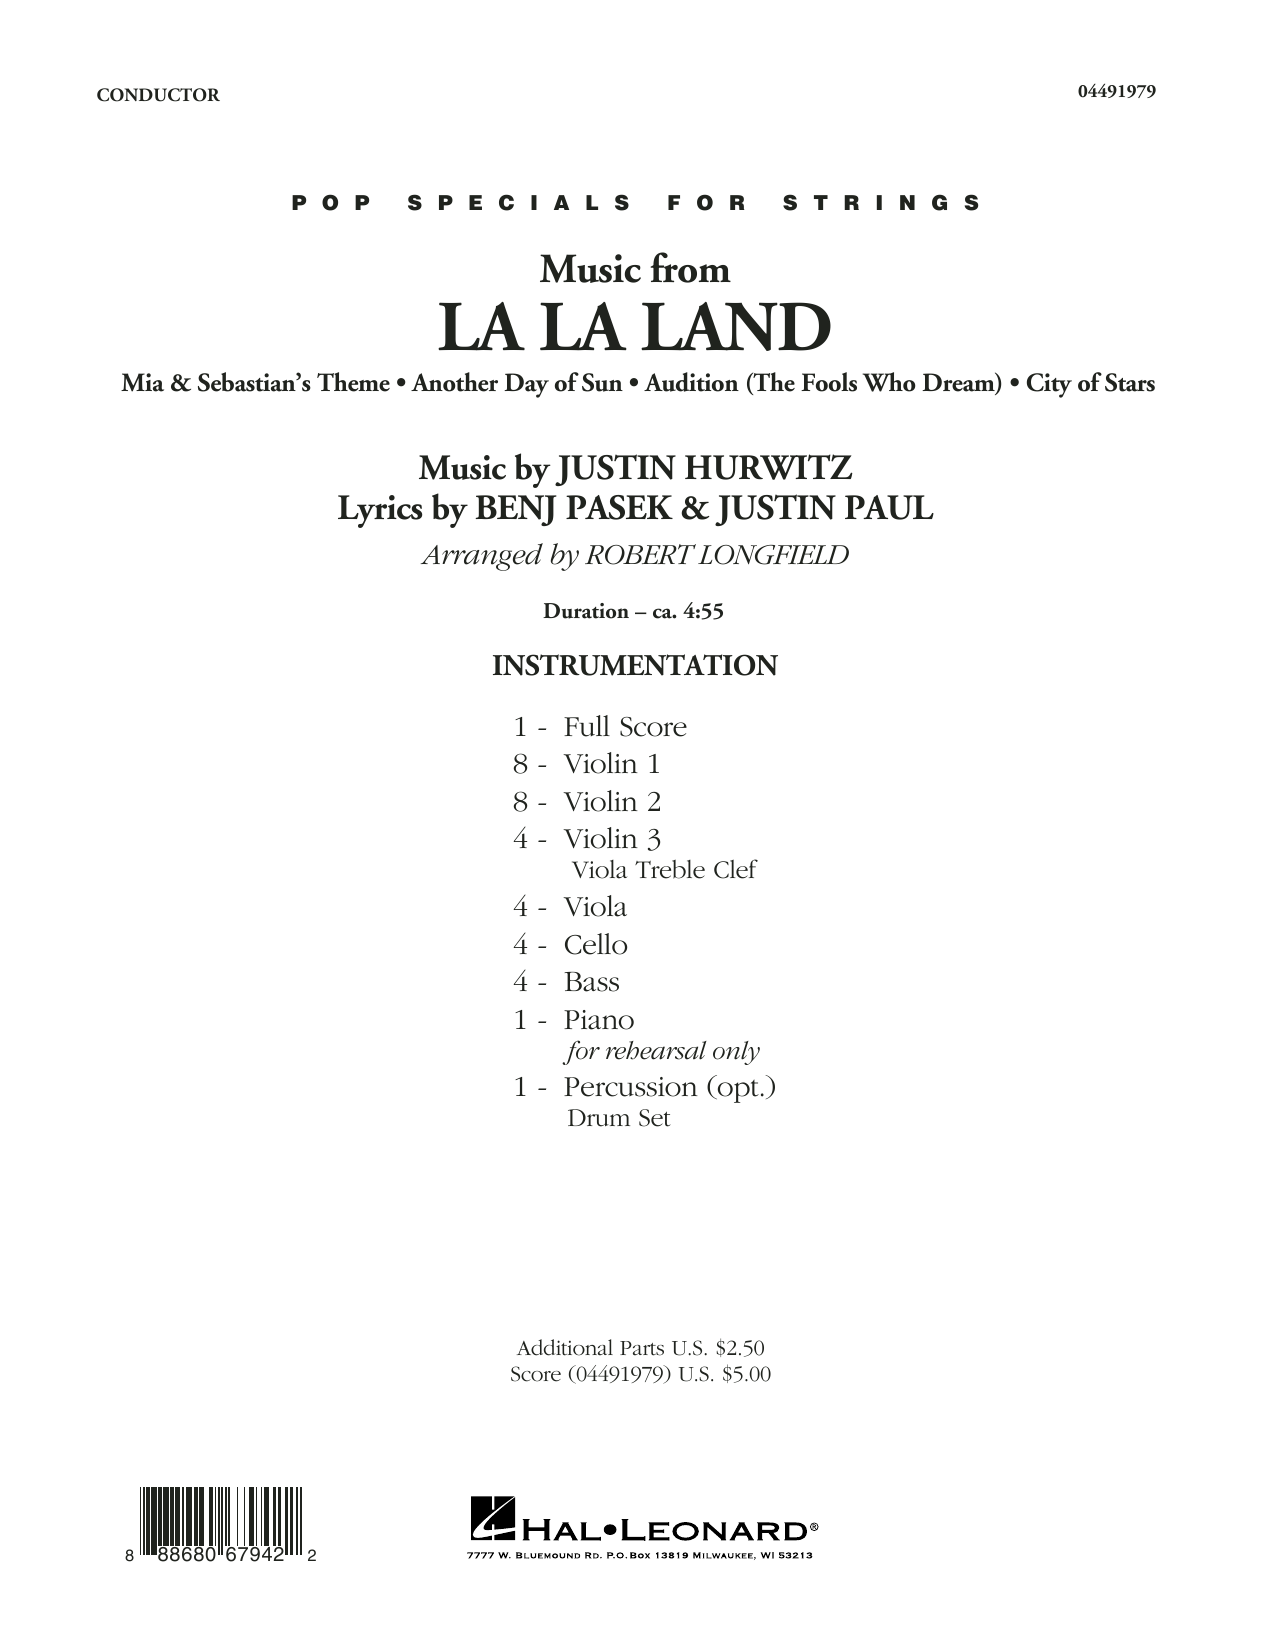 Download Robert Longfield Music from La La Land - Conductor Score Sheet Music